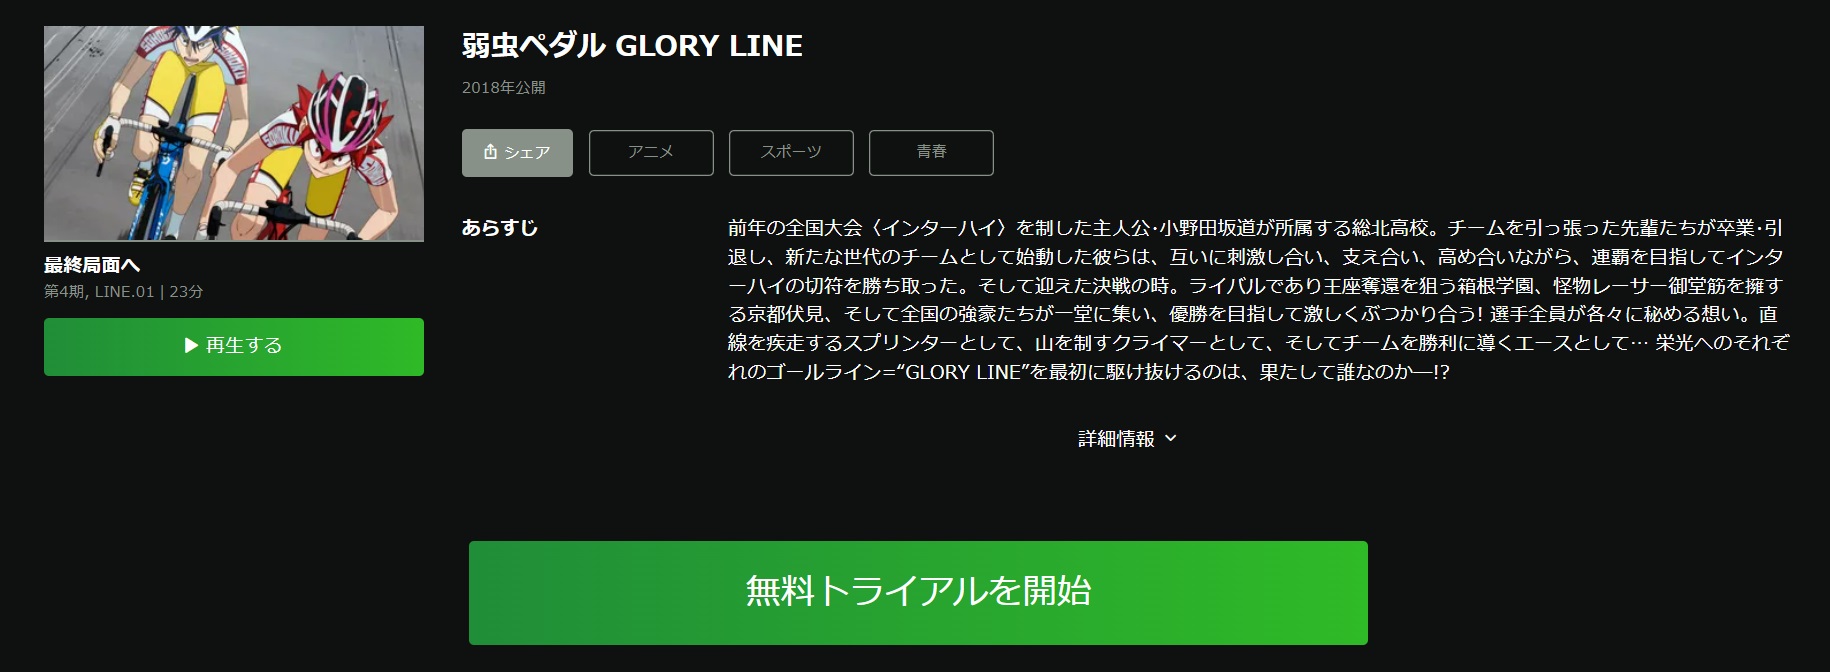 弱虫ペダル GLORY LINE（4期）